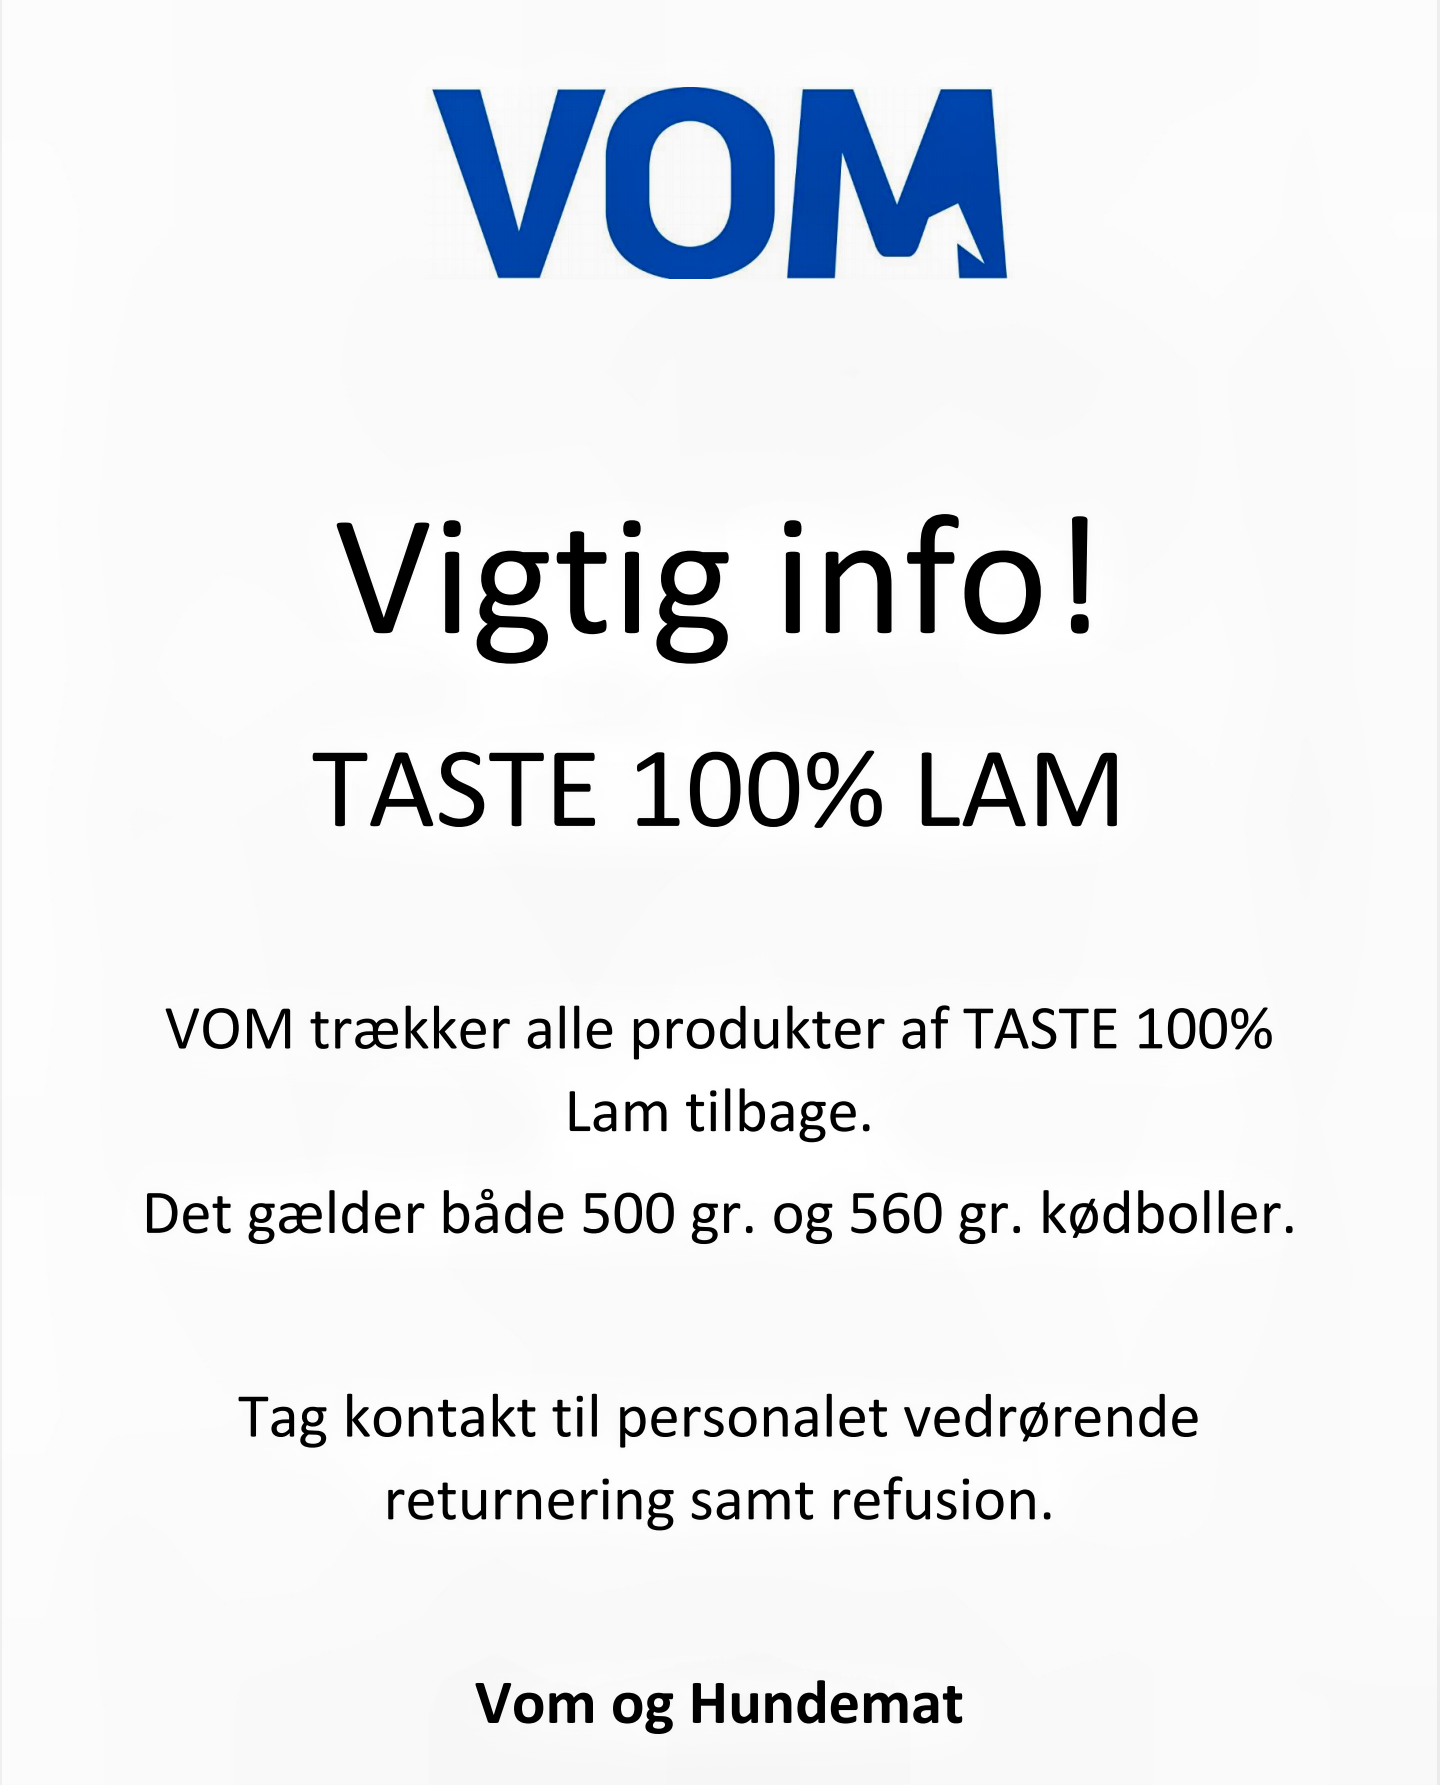 You are currently viewing Tilbagekaldelse af VOM TASTE 100% LAM